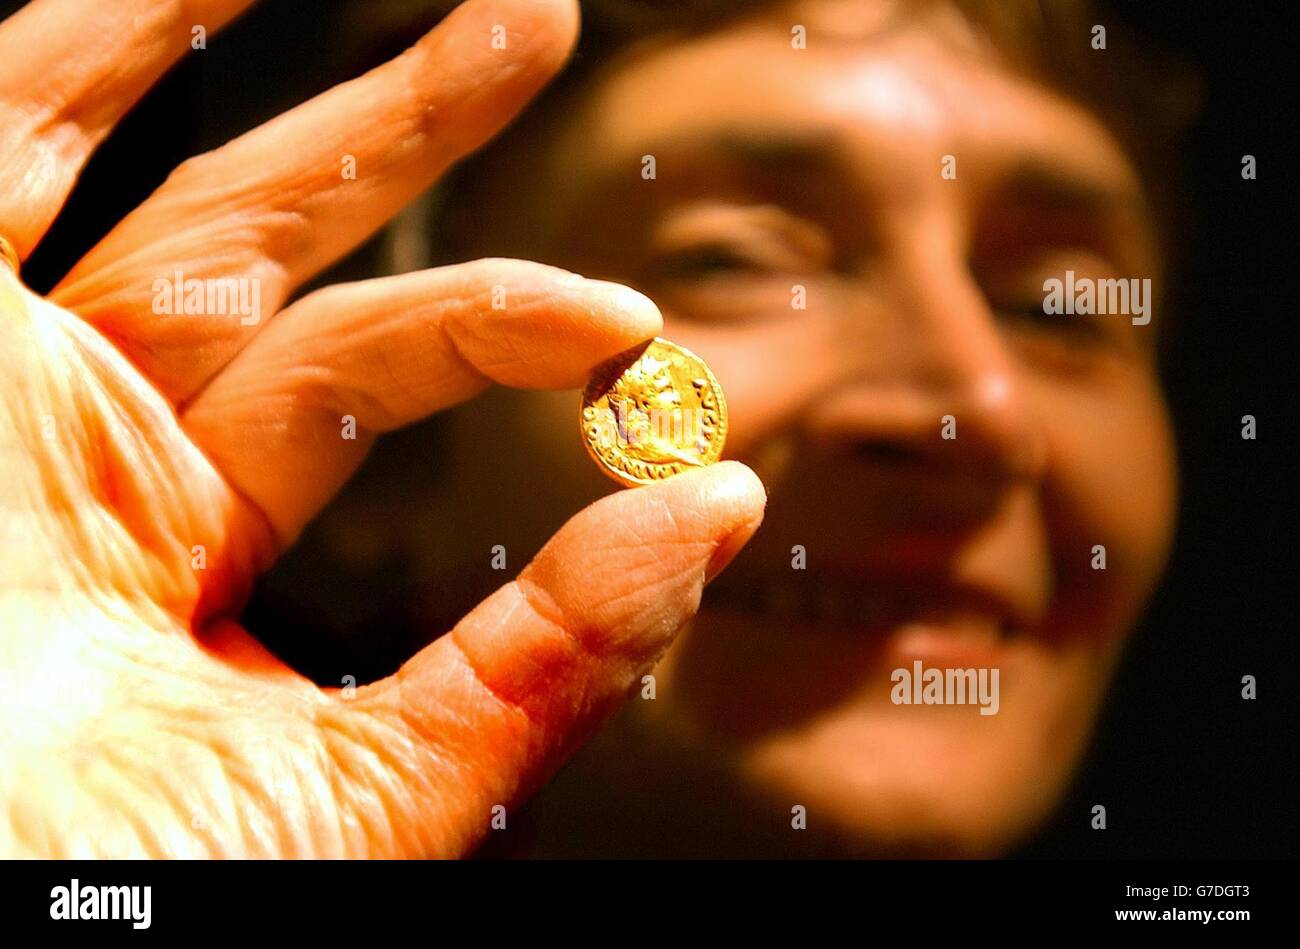 Estelle Morris El Ministro de Estado para las Artes, en el Guildhall, tiene un dorado romano del emperador Nerón, encontrado cerca de Bodmin en Cornwall. El ministro estuvo en la ciudad de Londres para anunciar que 47.000 hallazgos arqueológicos fueron descubiertos por miembros del público el año pasado, arrojando nueva luz sobre la historia de Gran Bretaña. Foto de stock